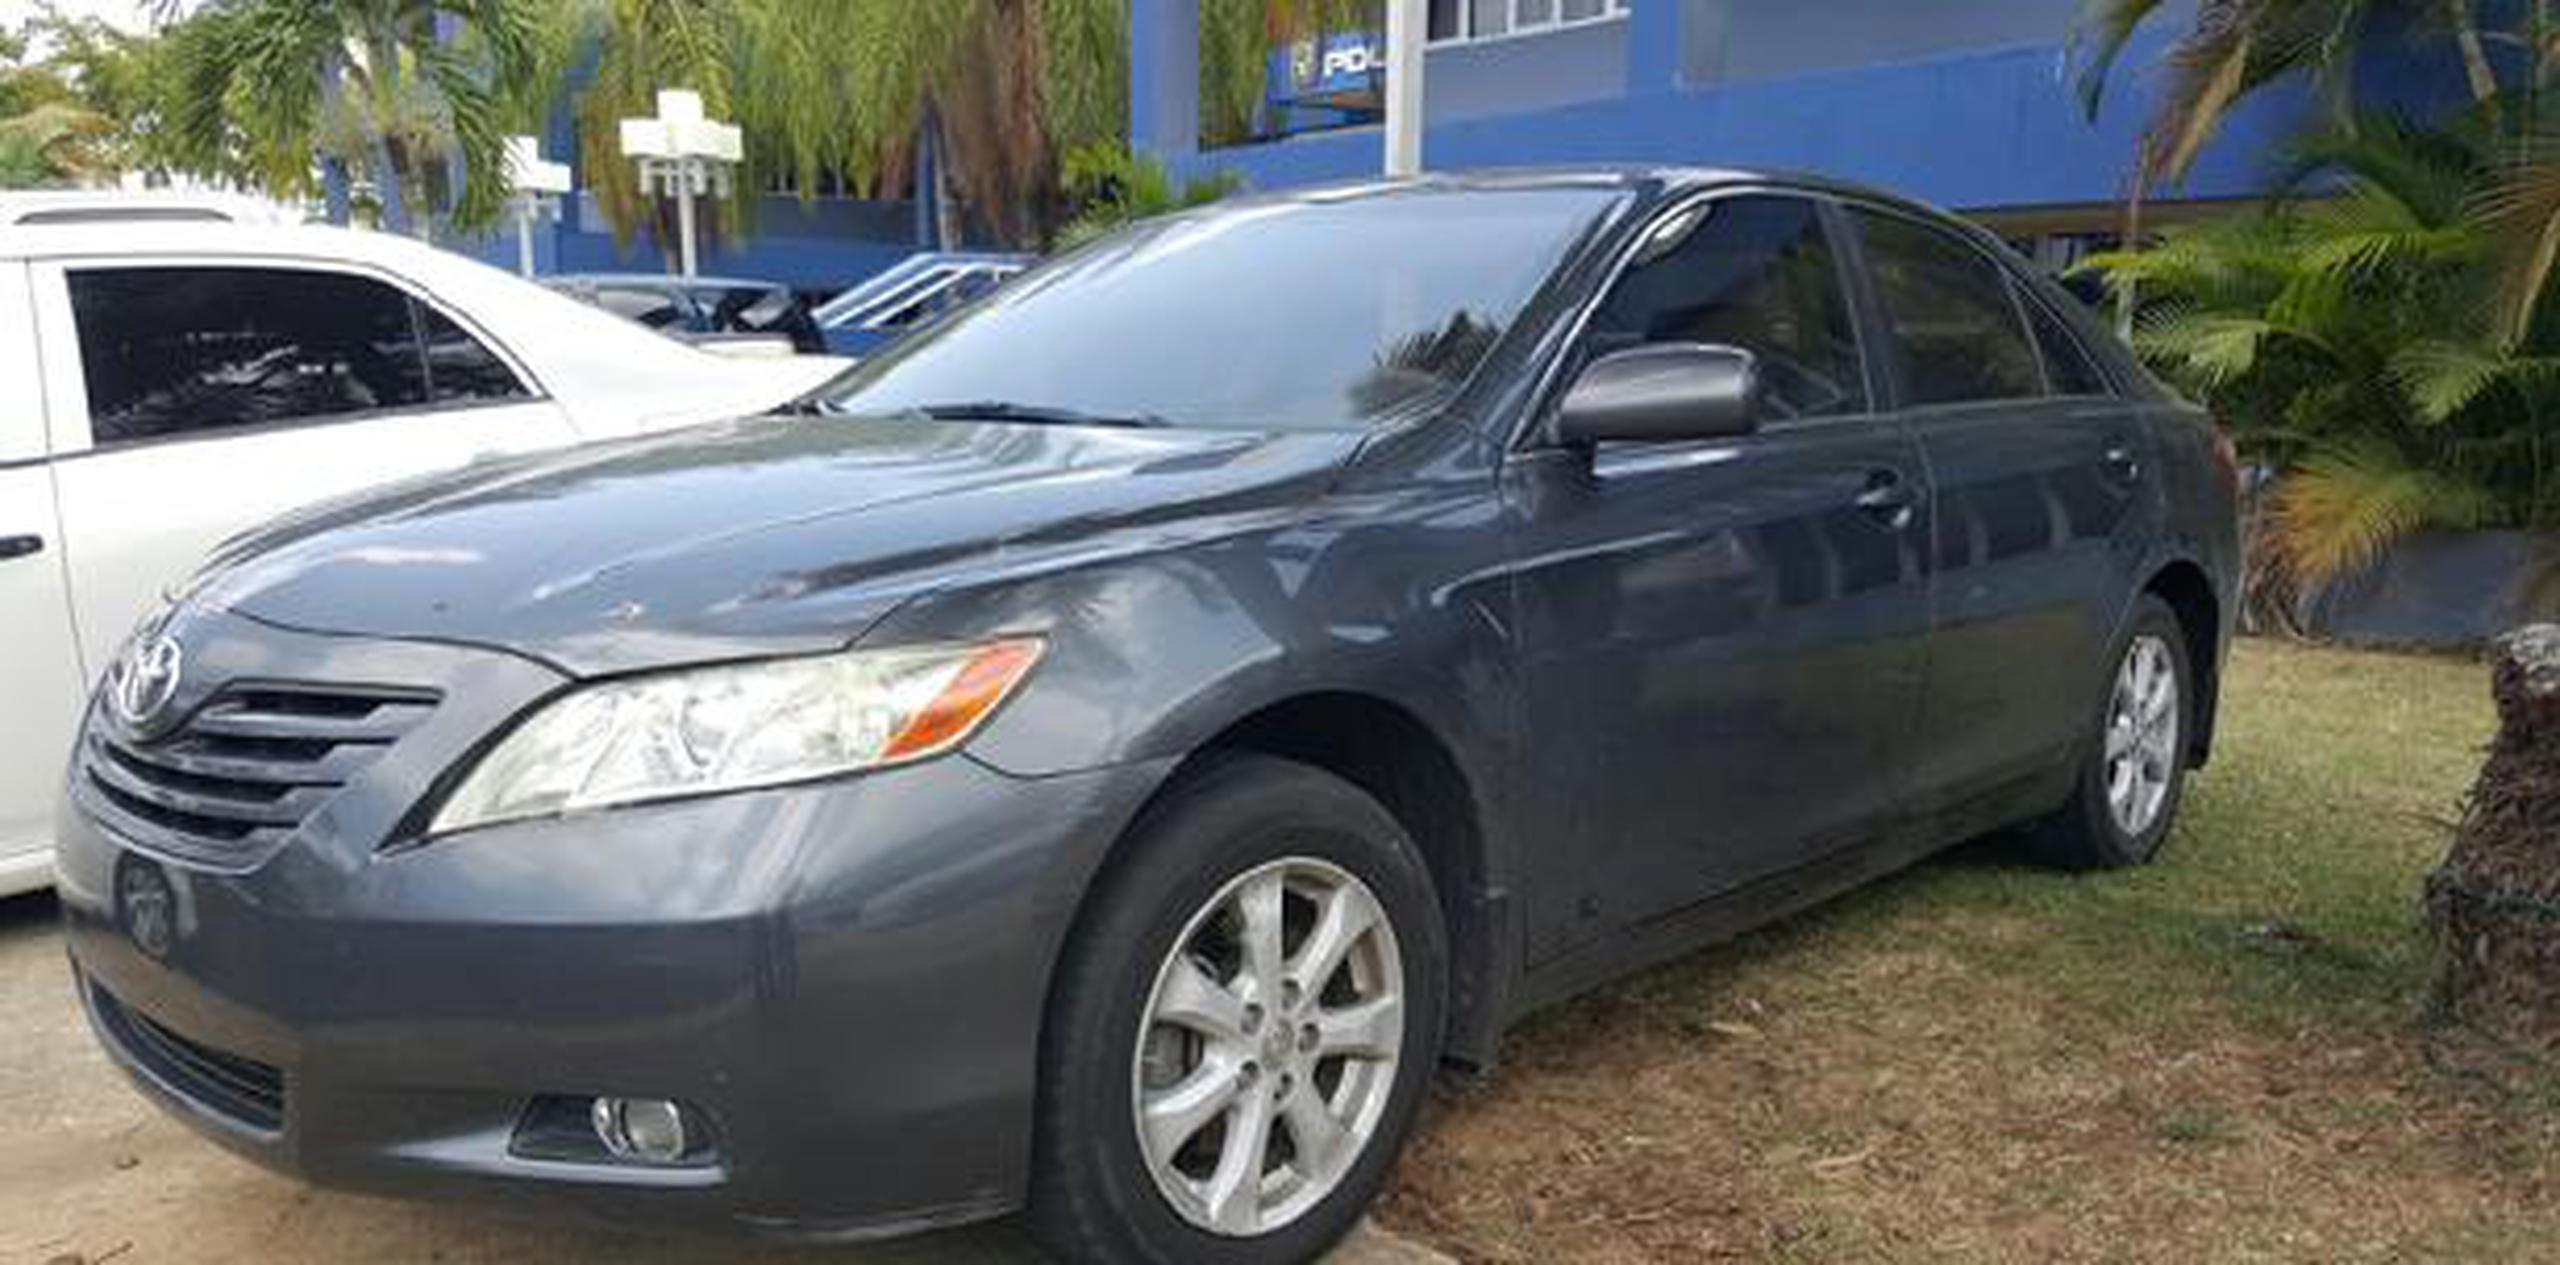 El vehículo de Frankie Torres Marín, de 53 años, fue encontrado el sábado en el estacionamiento del centro comercial Los Colobos, en Carolina. (Archivo/ vanessa.serra@gfrmedia.com)